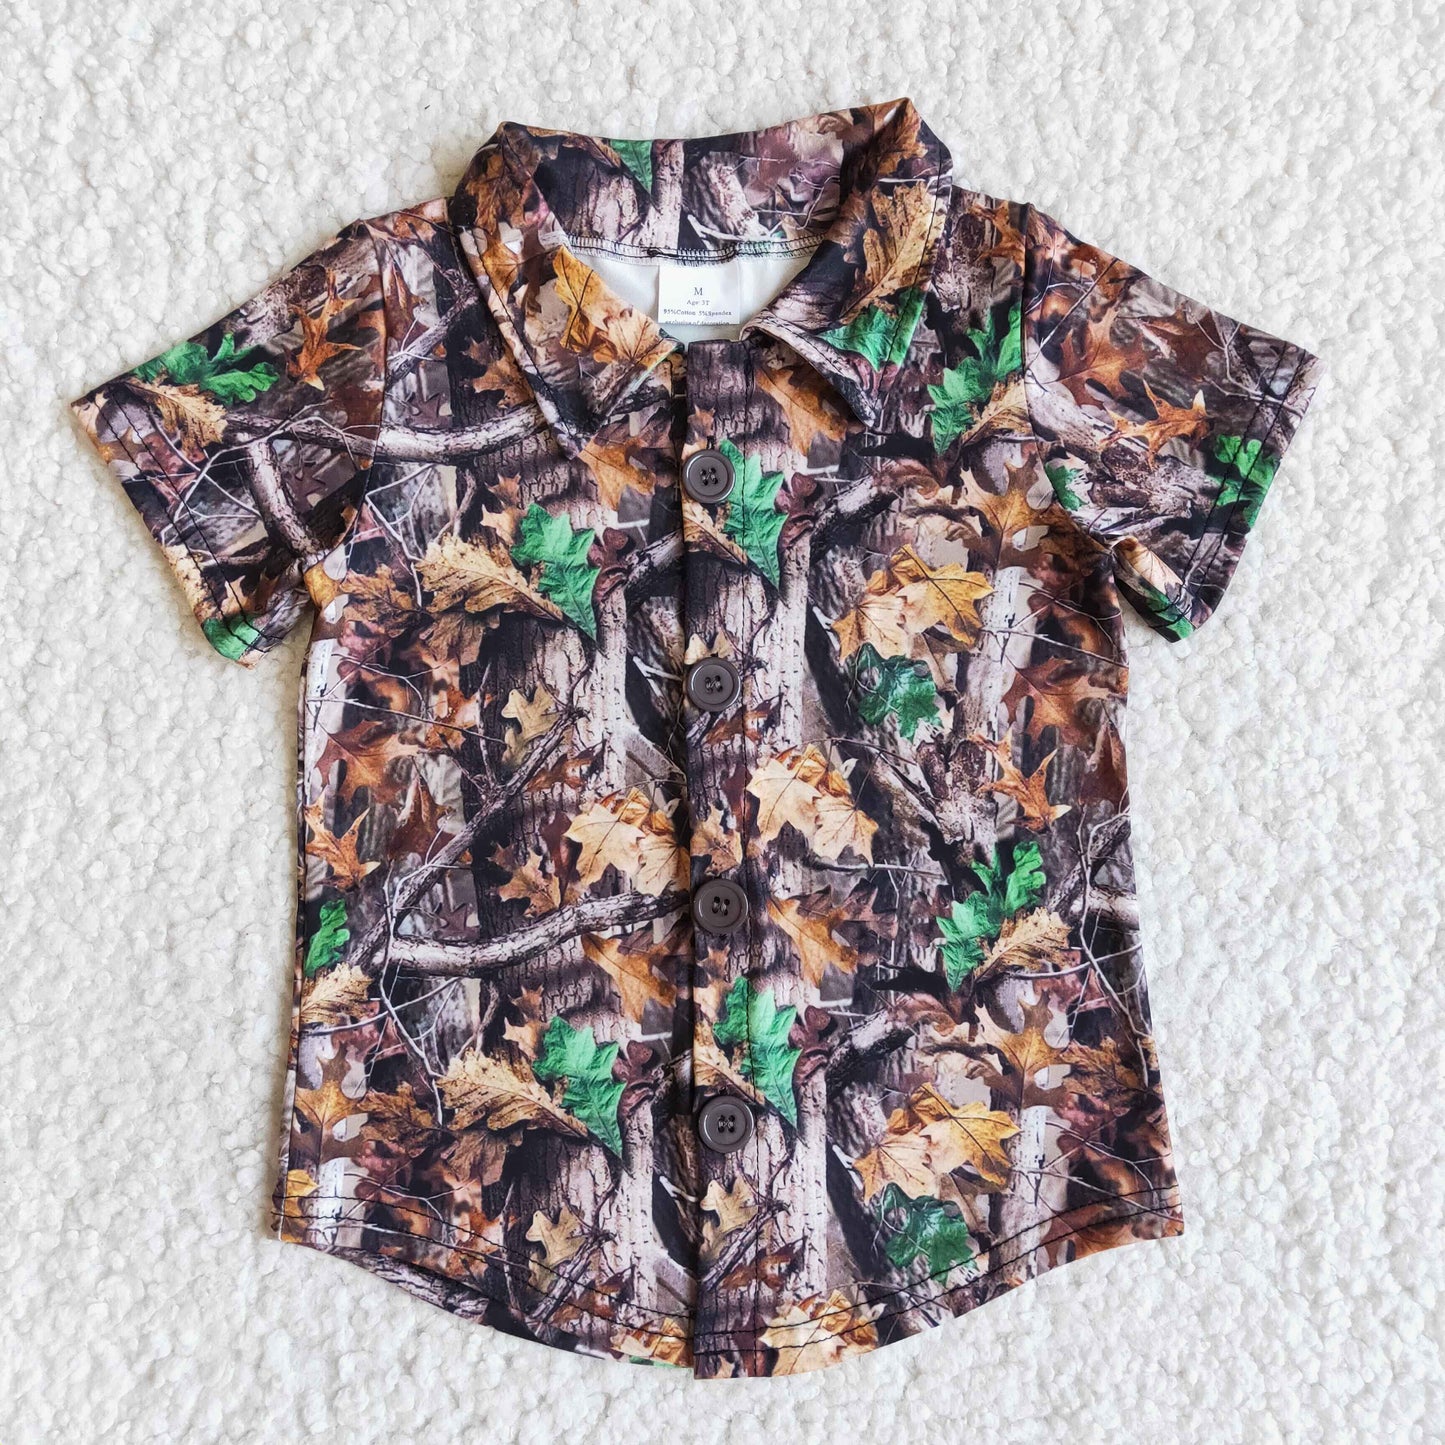 kids toddler boy's clothing snap shirt summer